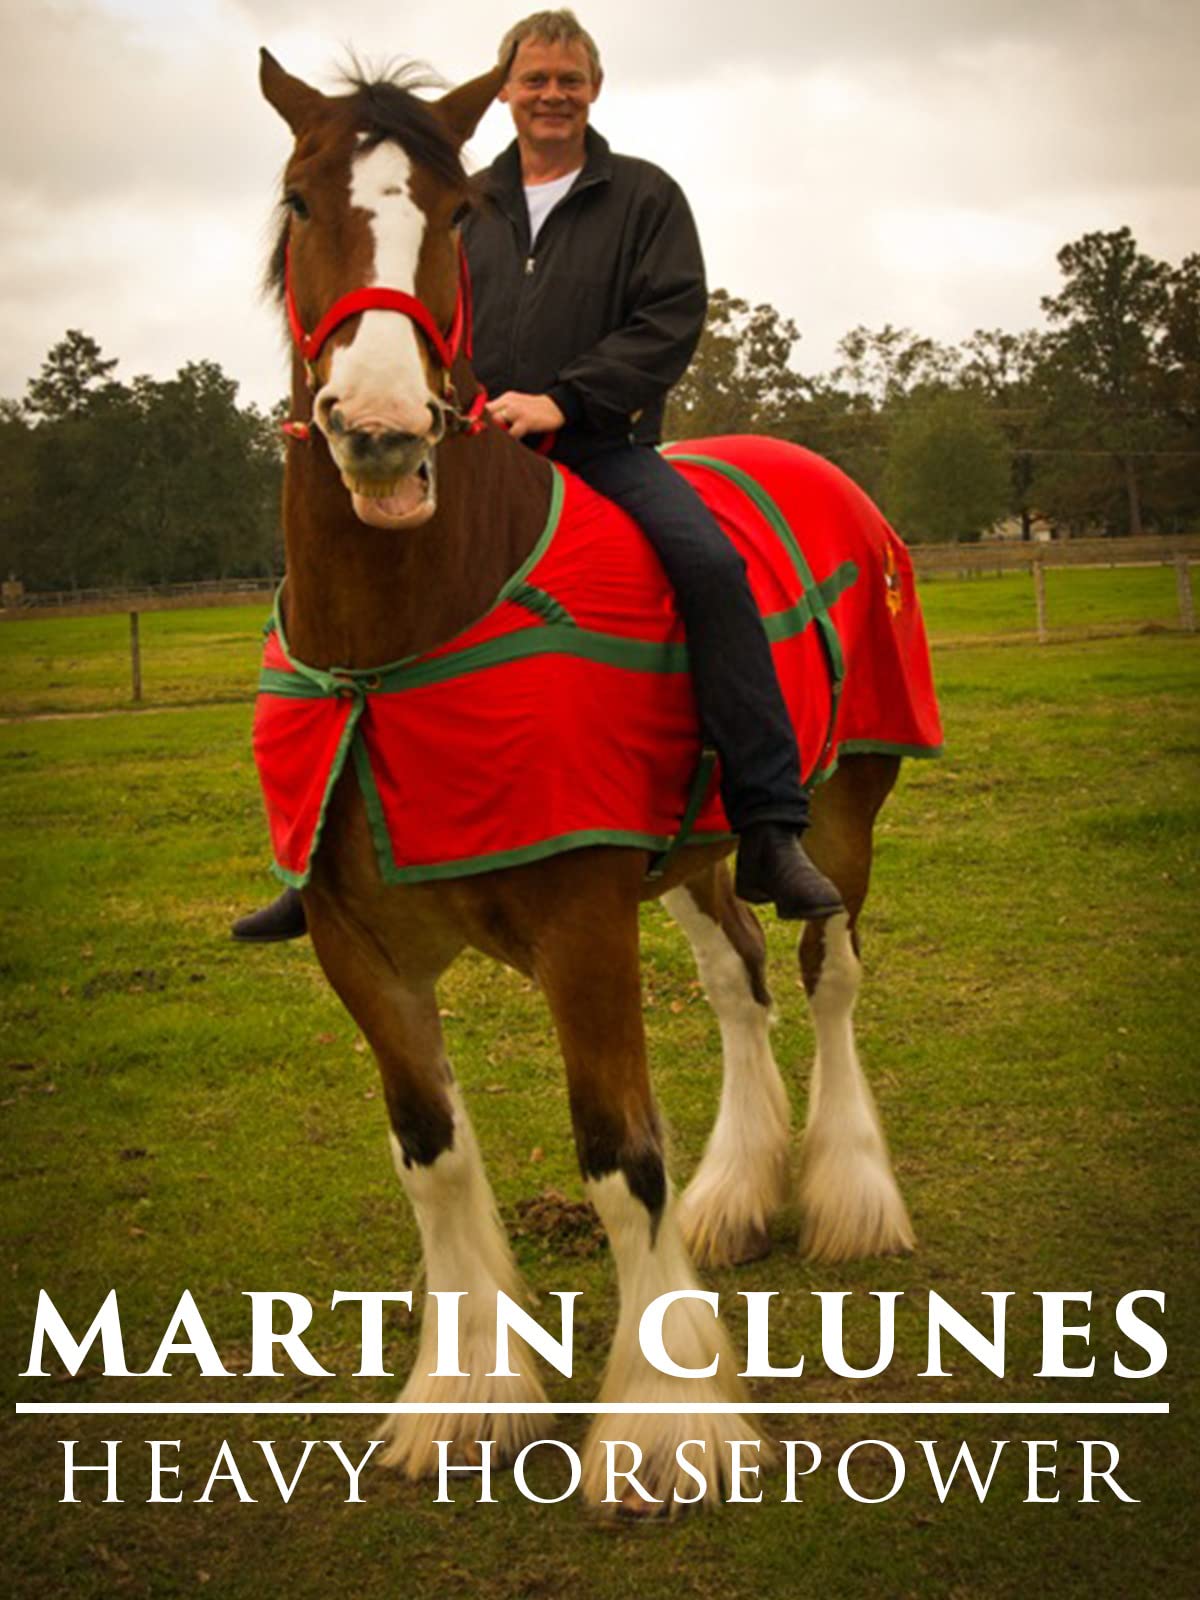 Martin Clunes: Horsepower Wallpapers